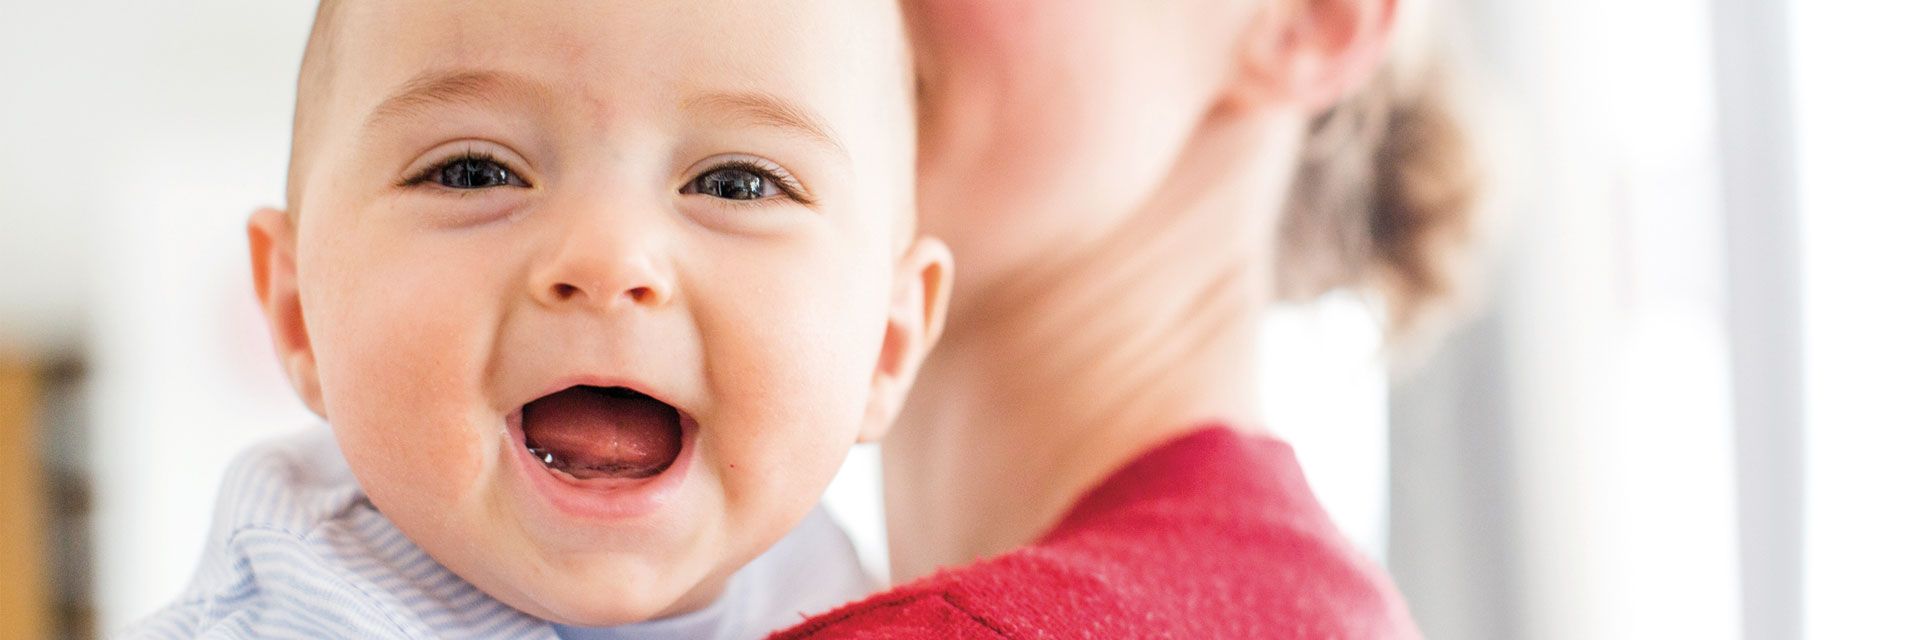 Foto: Ein Kleinstkind blickt mit strahlendem Lachen über die Schulter der Mutter.